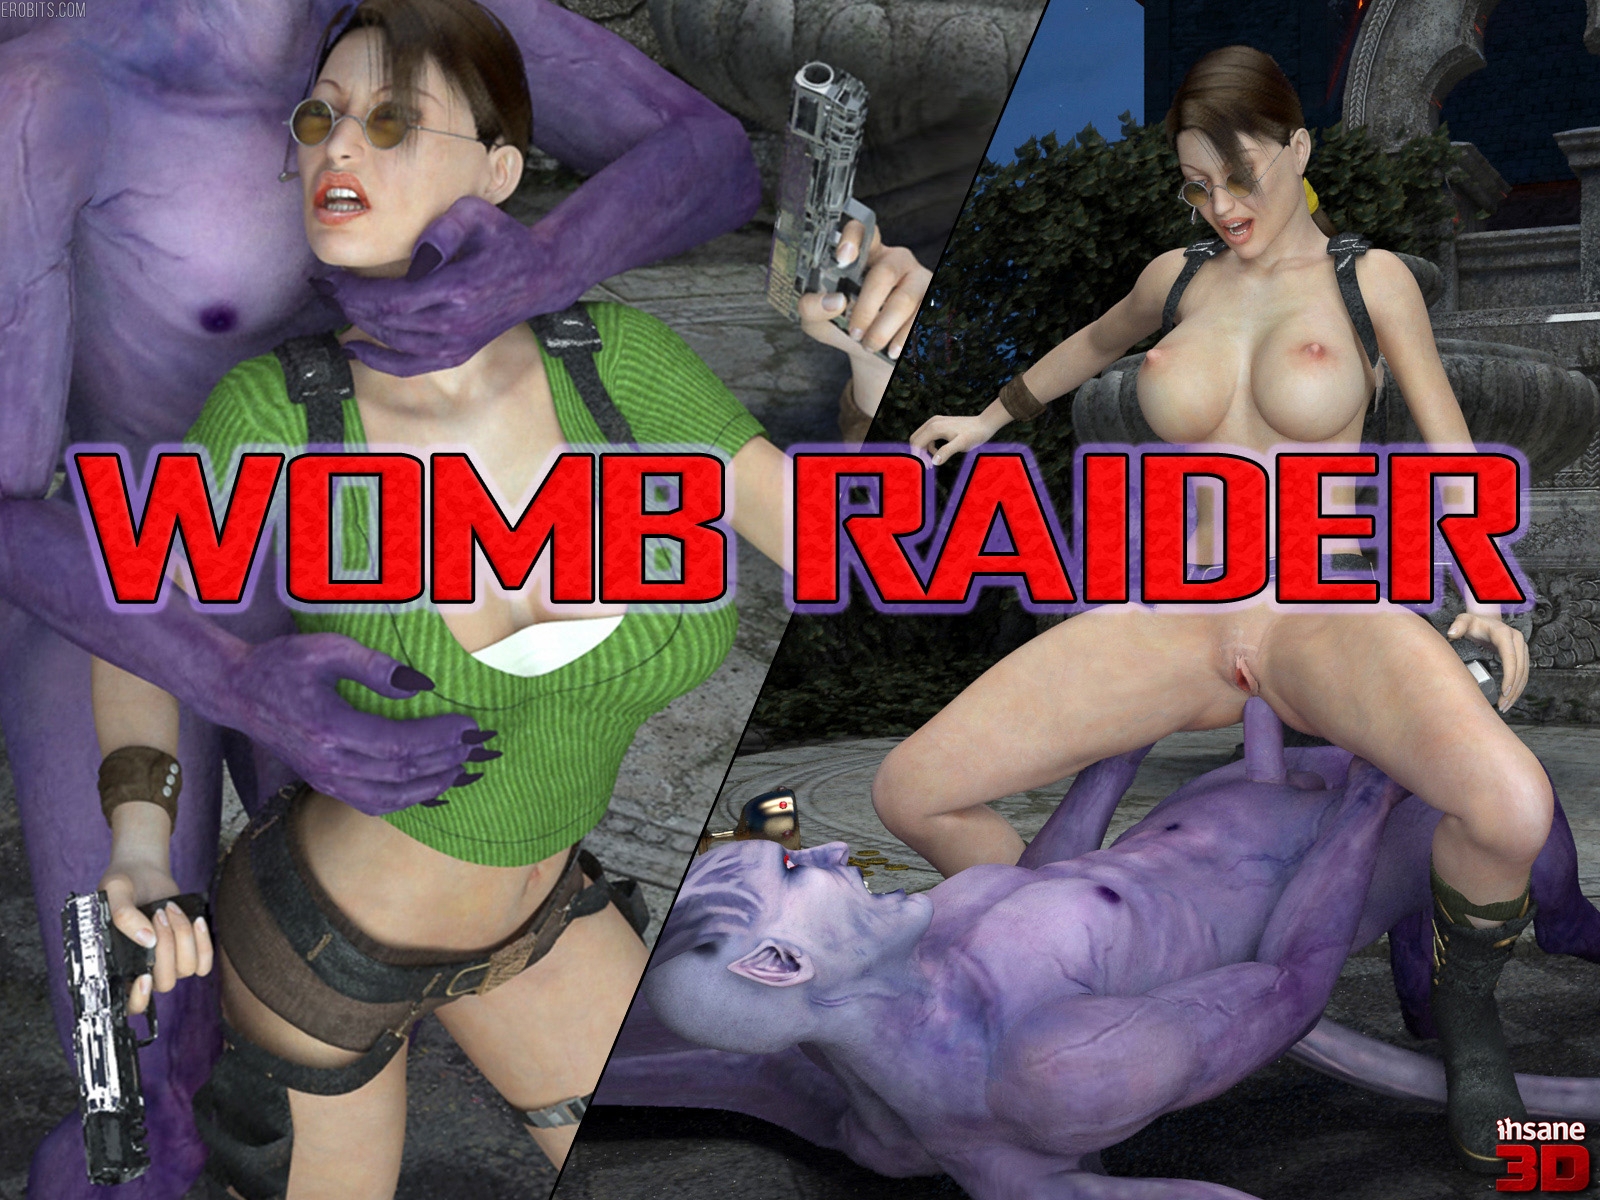 Womb Raider 👉 https://erobits.com/parody/womb-raider.html 👈